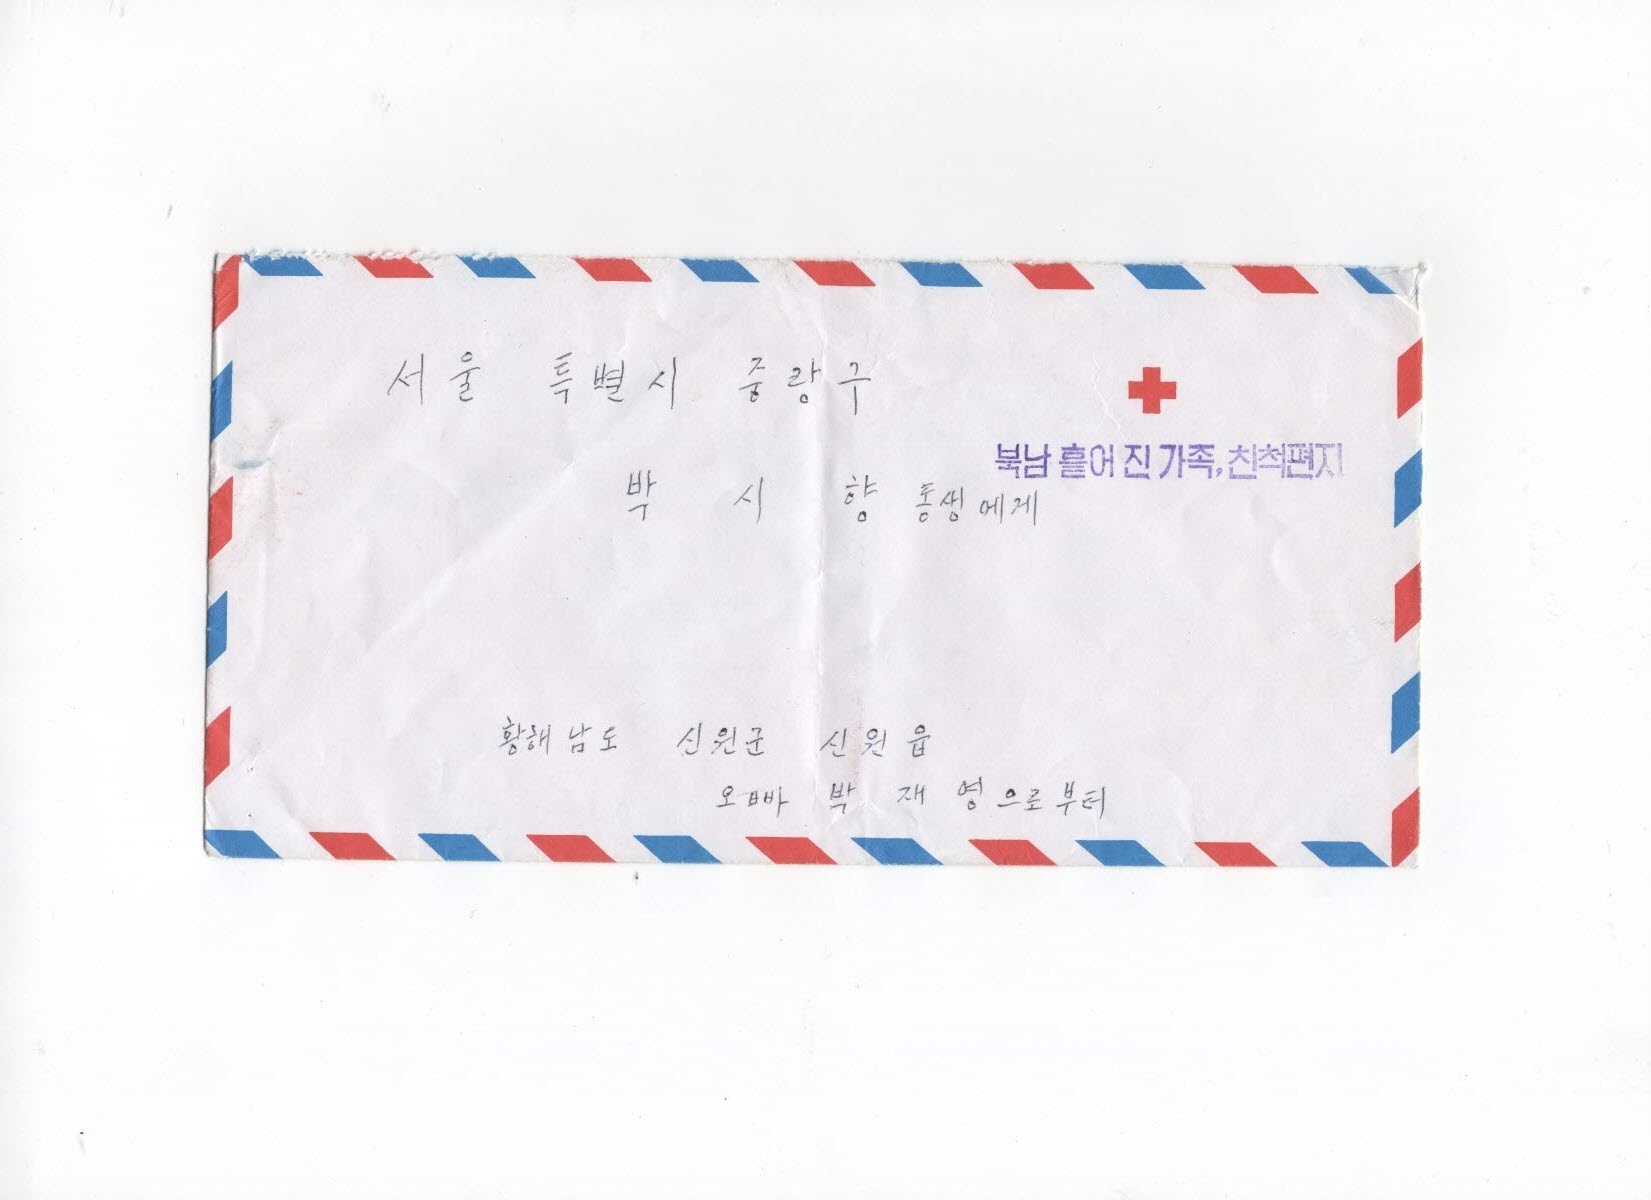 2001년 남북 서신교환 당시 이산가족 박재풍의 북측 이산가족 박재영이 여동생 박시향에게 보낸 편지봉투